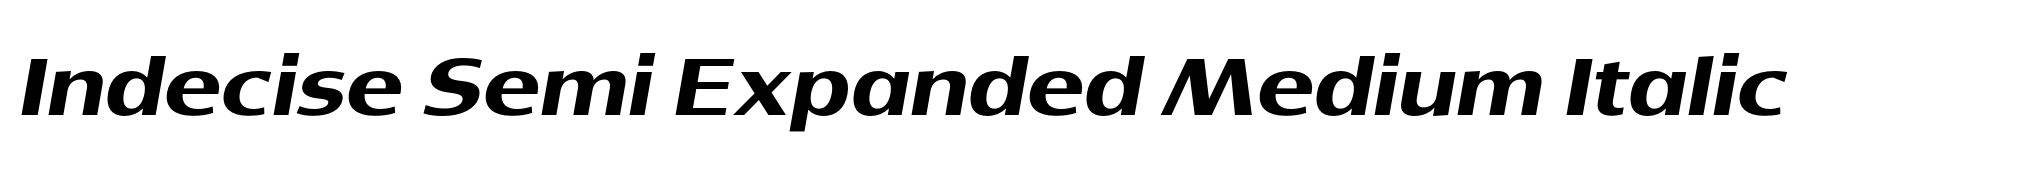 Indecise Semi Expanded Medium Italic image